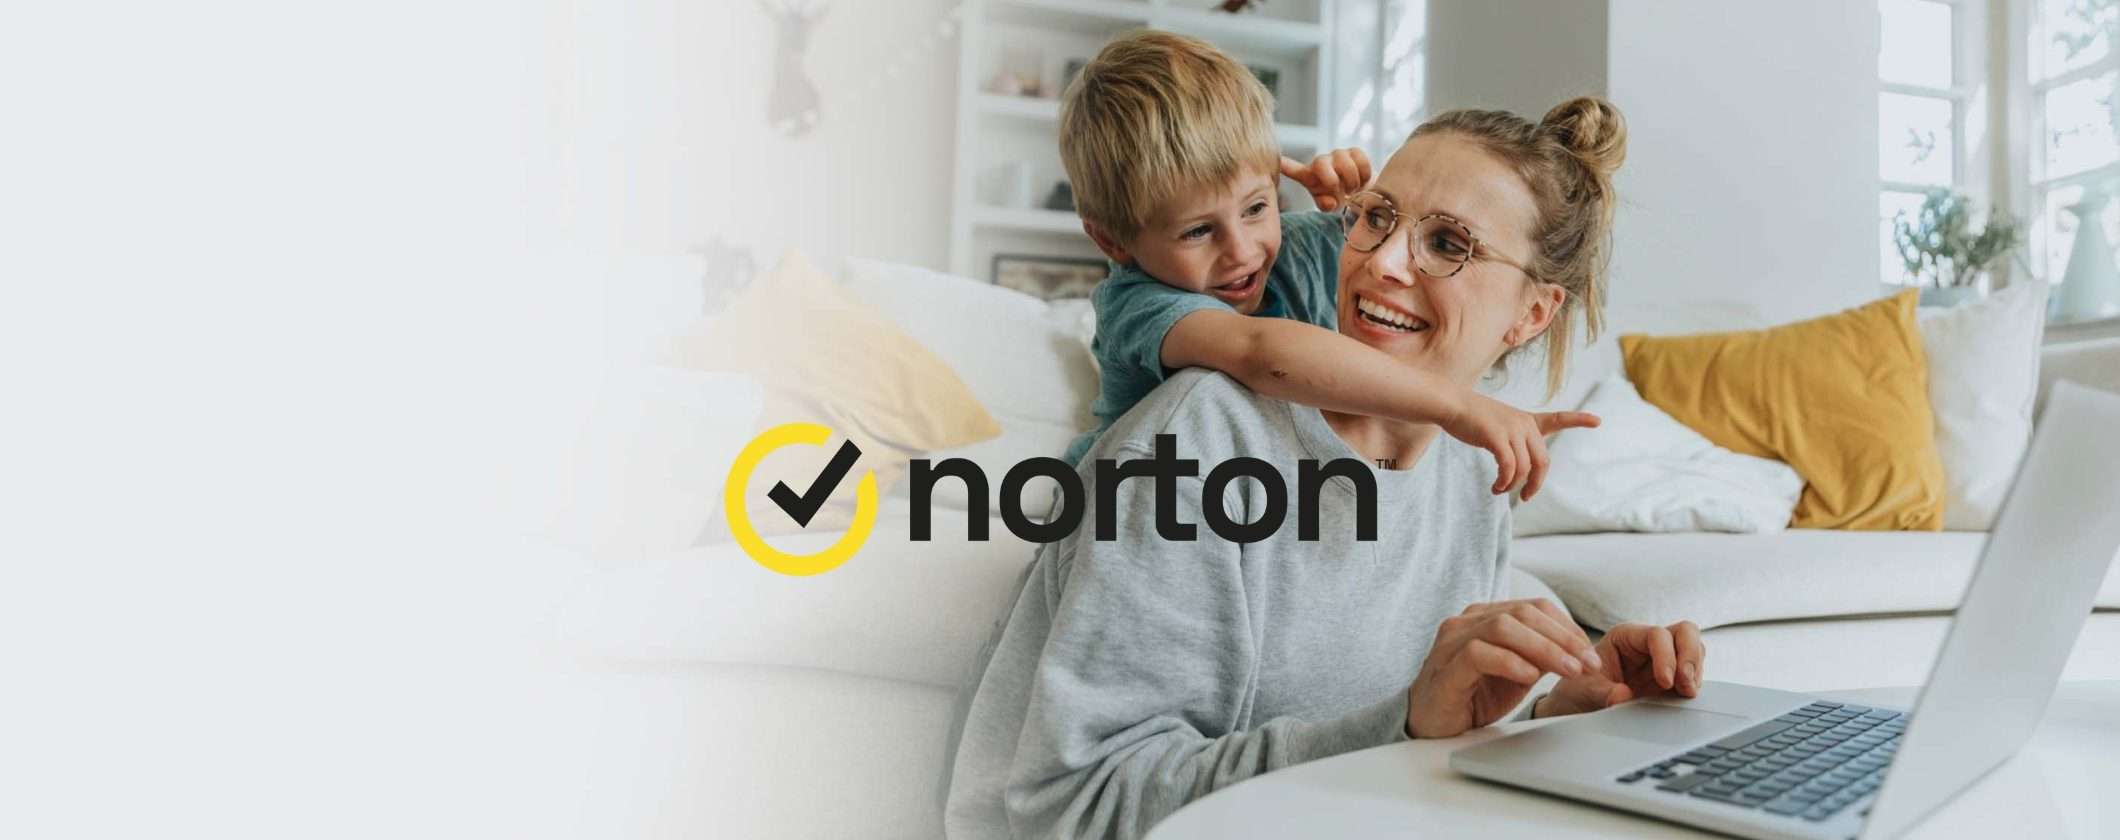 Perché Norton Antivirus è la scelta giusta